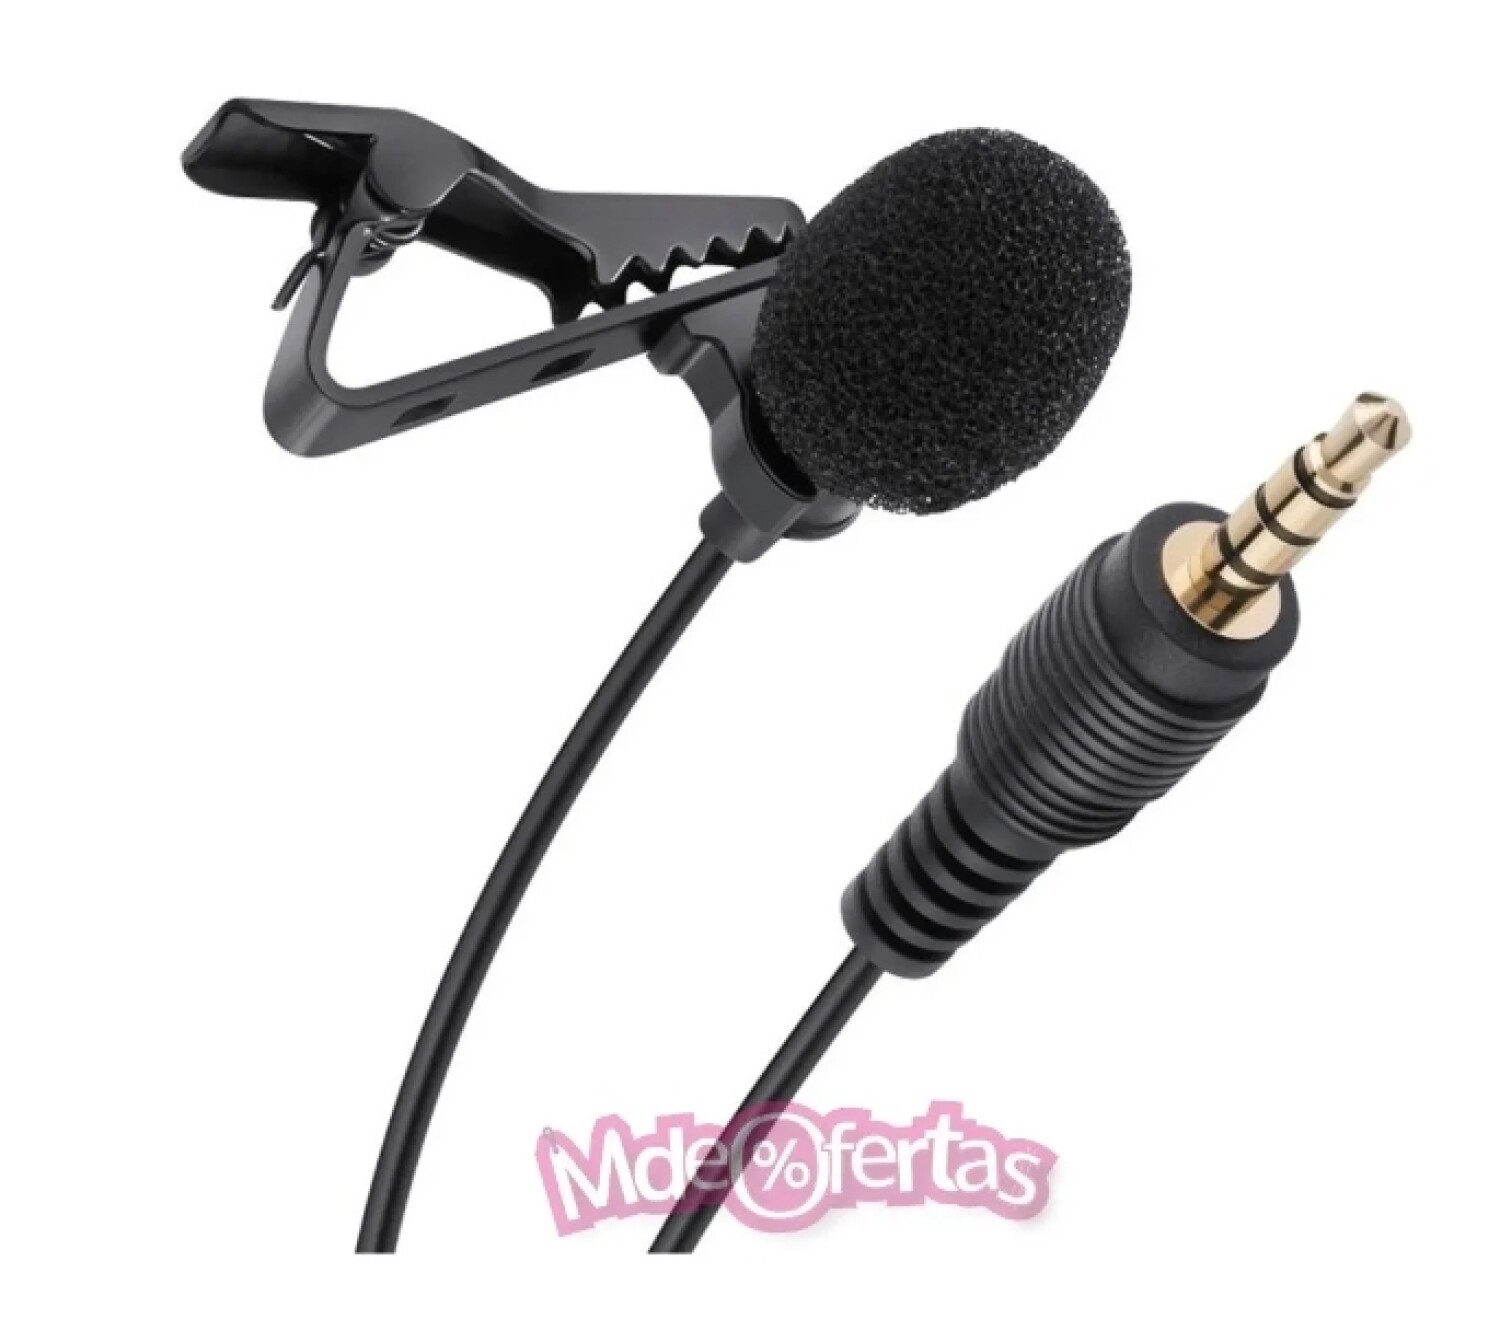 Mini Microfono karaoke para celulares